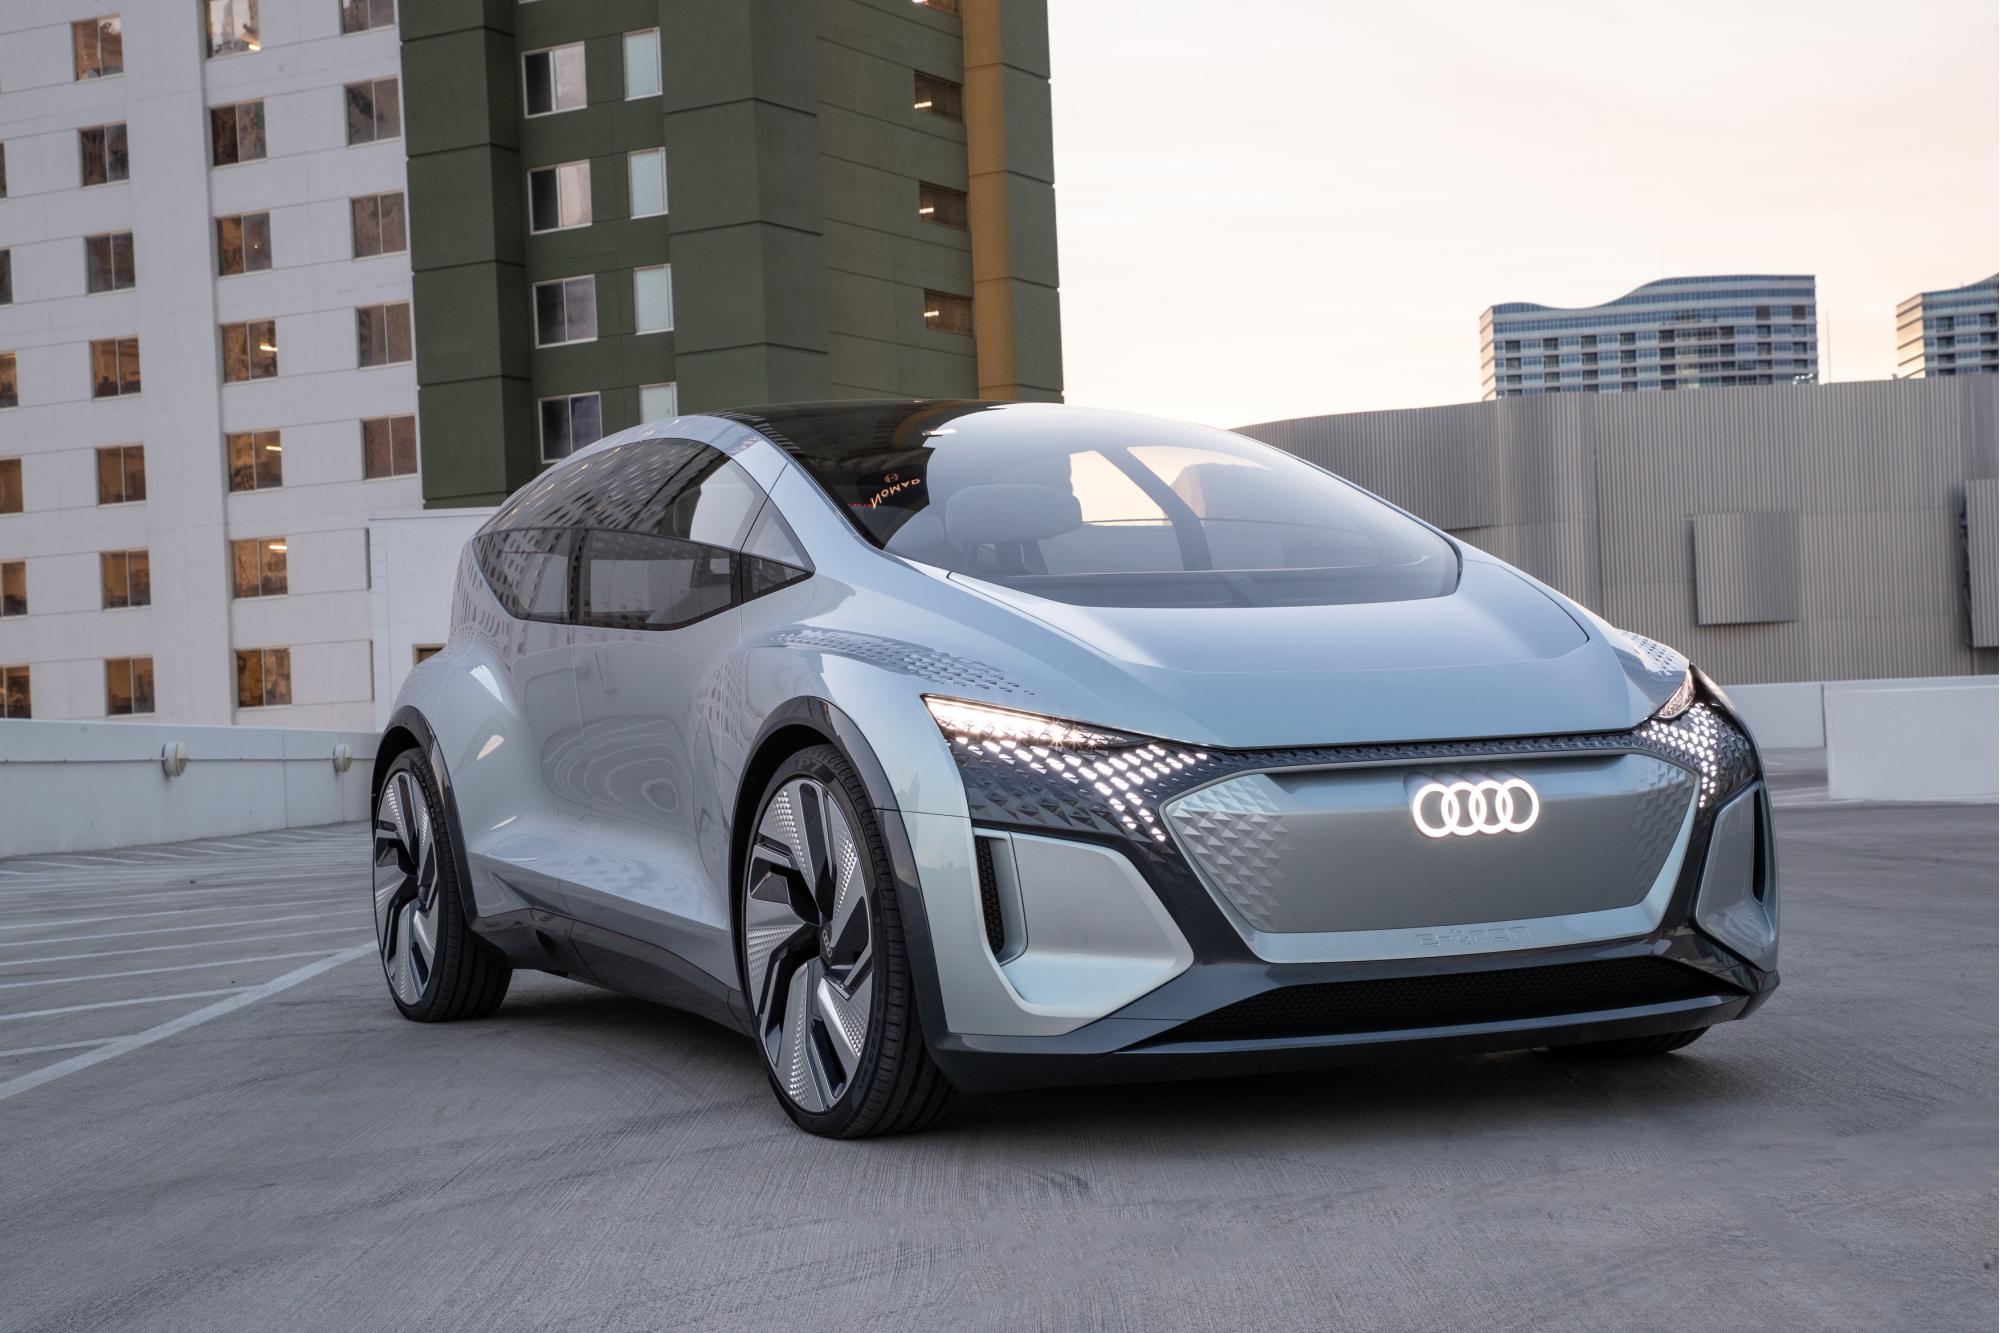 Η Audi παρουσιάζει το μέλλον στην έκθεση τεχνολογίας CES 2020